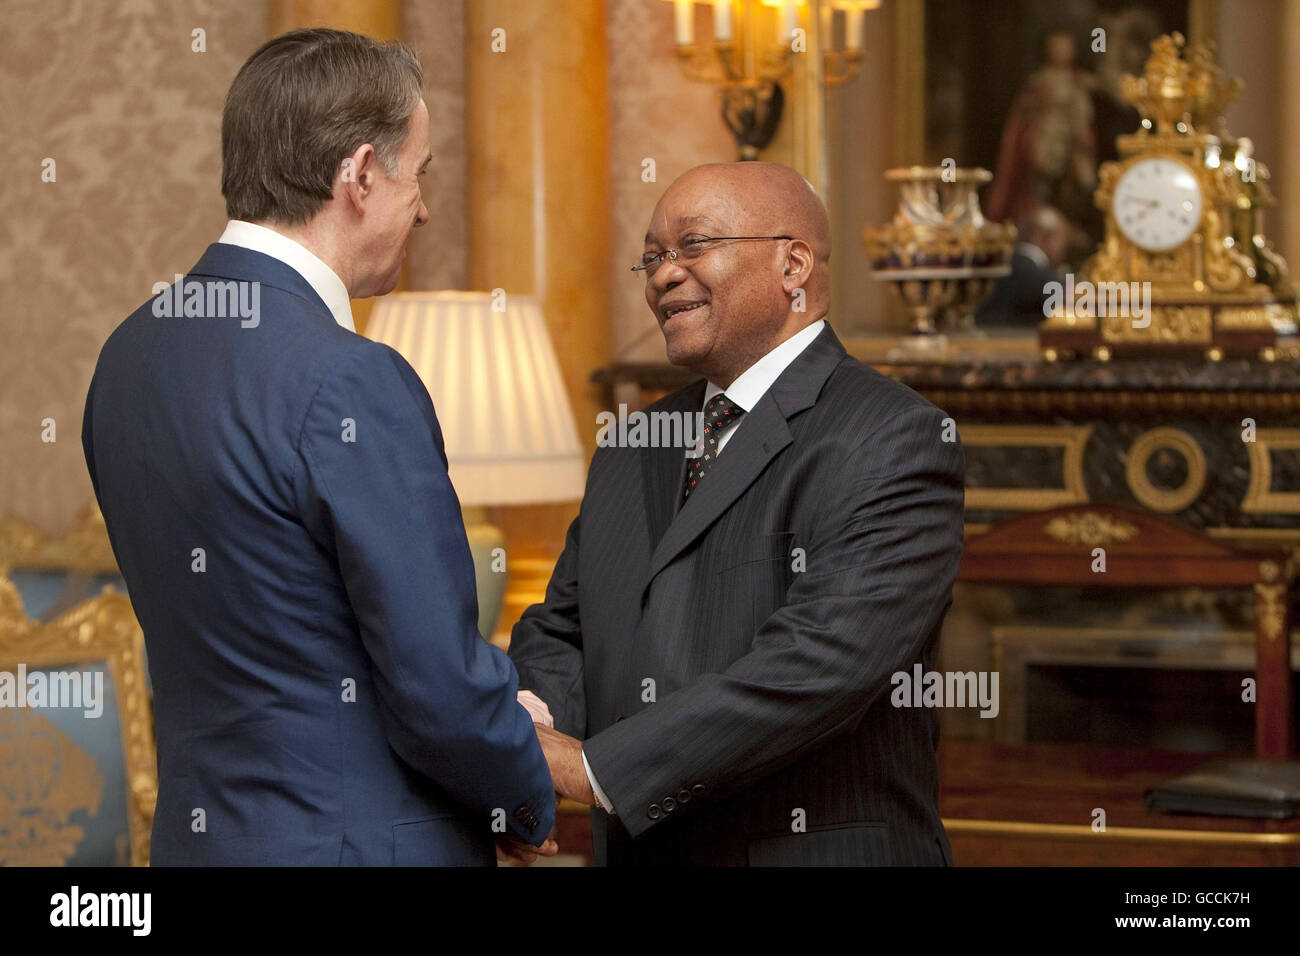 Der südafrikanische Präsident Jacob Zuma trifft Wirtschaftsminister Lord Mandelson vor einem Geschäftsfrühstück im Buckingham Palace im Zentrum von London am letzten Tag seines Staatsbesuchs in Großbritannien. Stockfoto